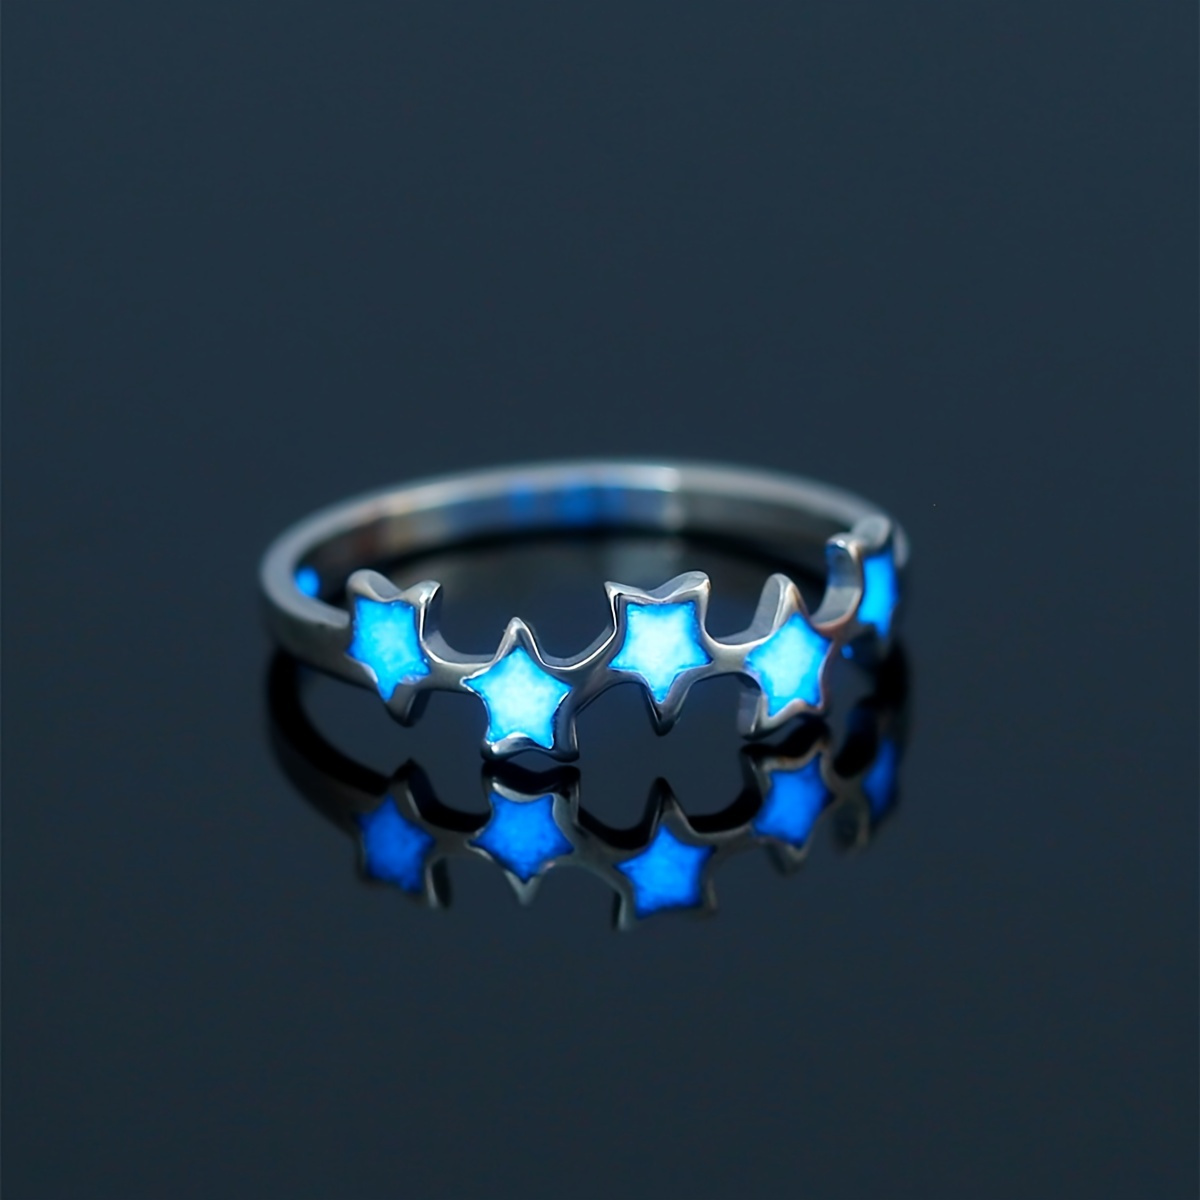 

Sky Blue Luminous Star Element Stainless Steel Ring For Women